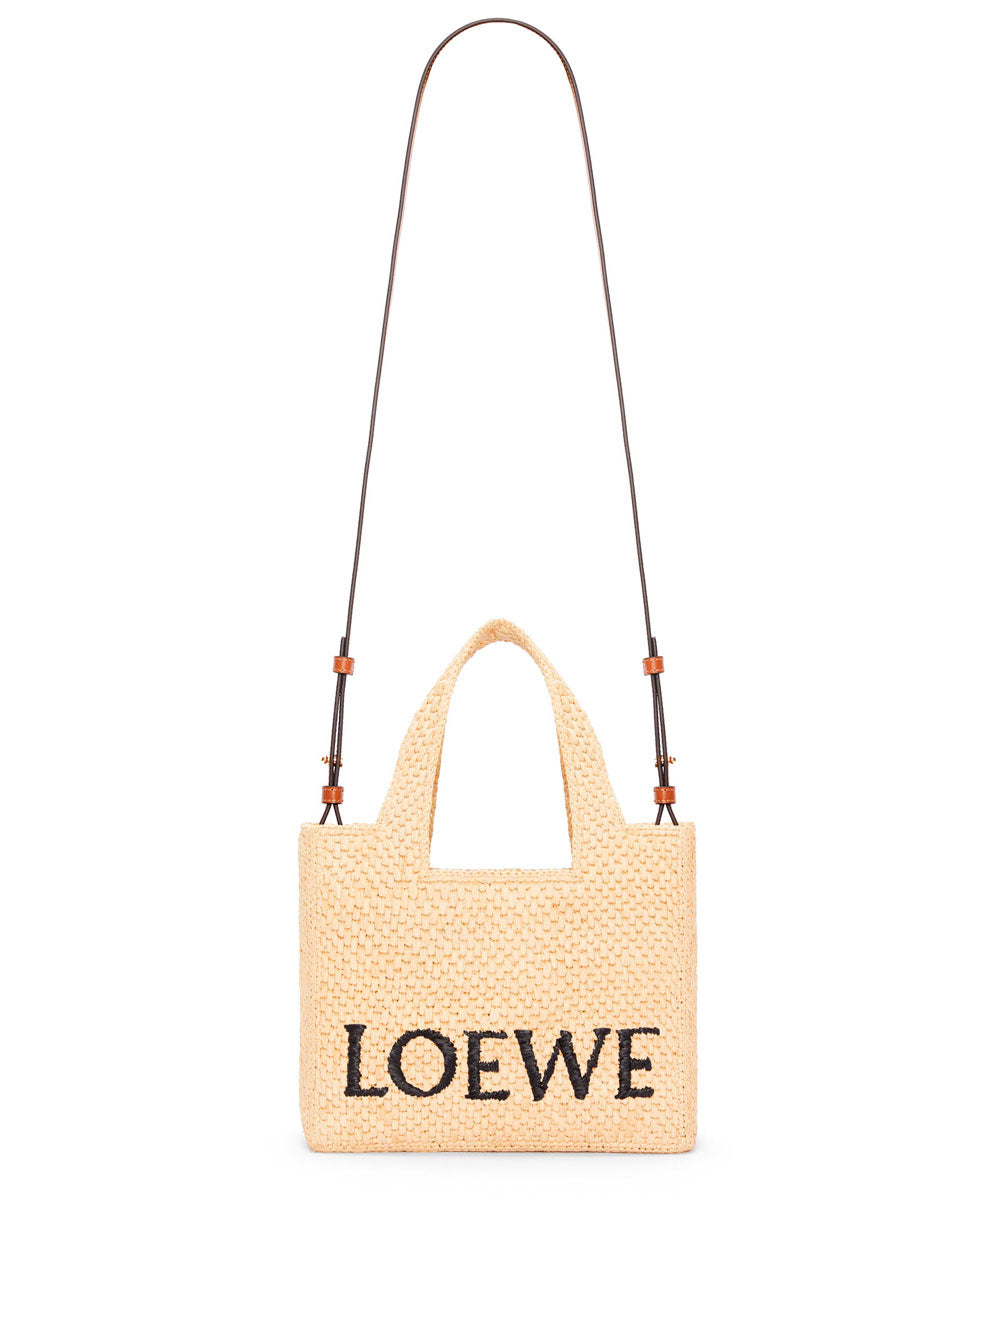 Loewe  Bolsos, ropa y accesorios de diseño para mujeres y hombres